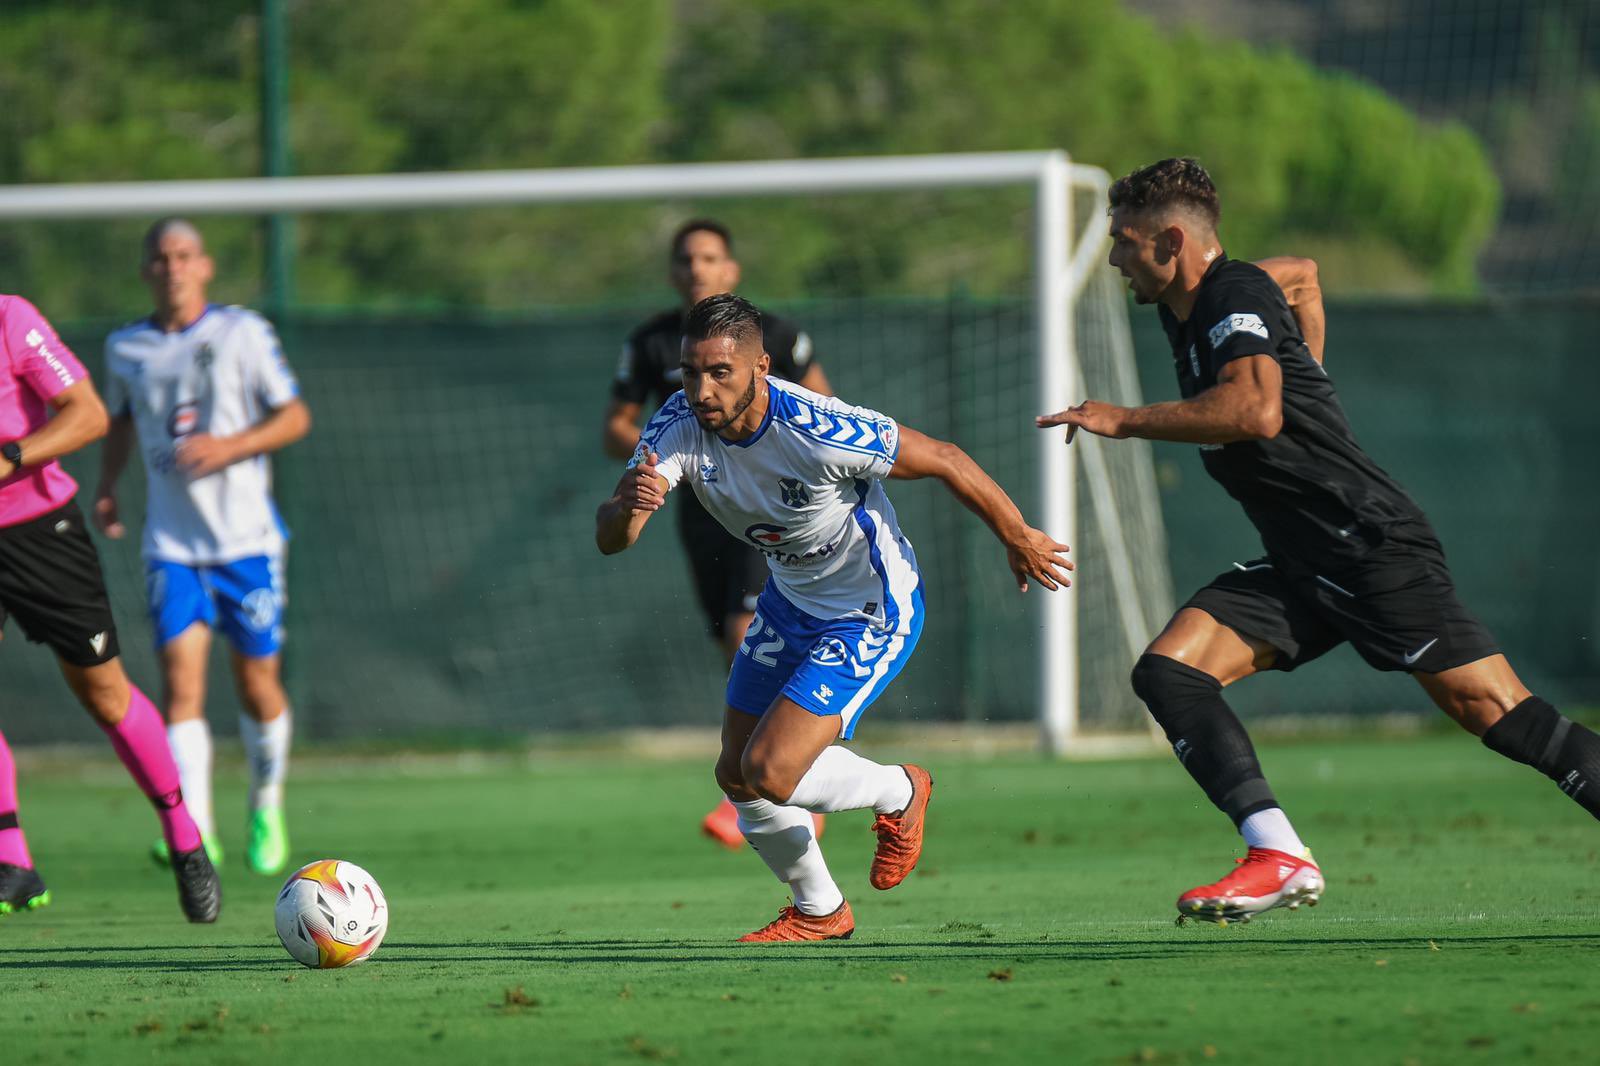 Crónica del Elche CF 2-2 CD Tenerife: “El Tenerife aprueba en el primer test exigente del verano”